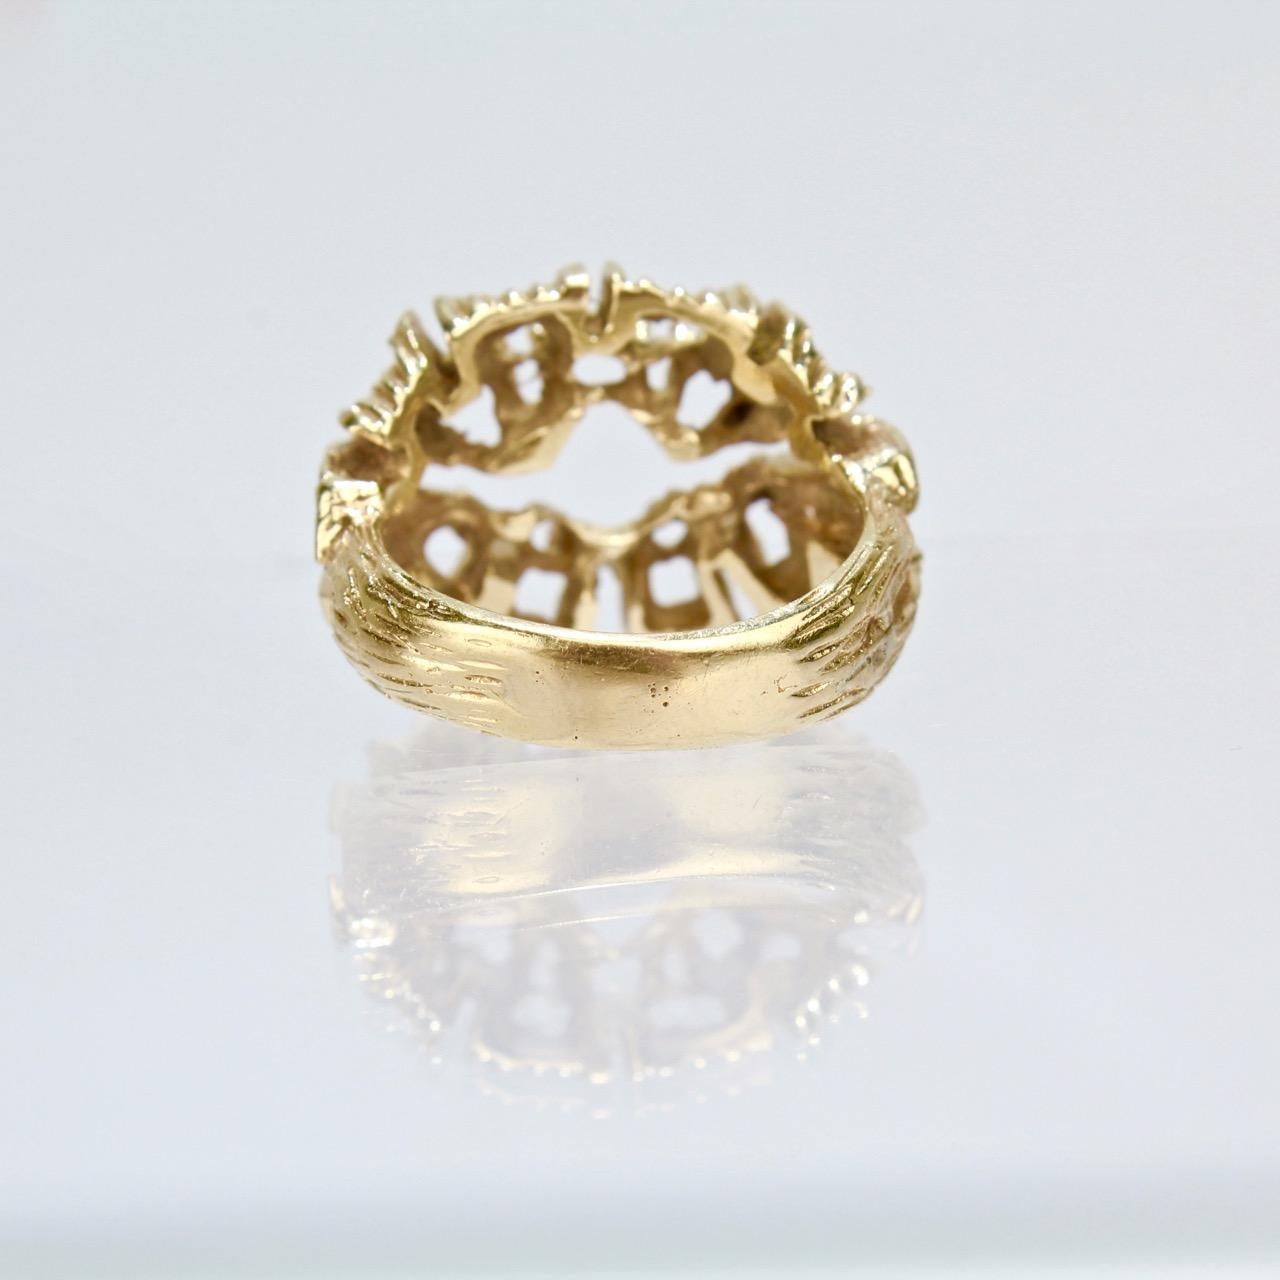 Fine Sculptural Brutalist 14 Karat Gold Ring with an Openwork Matrix 1